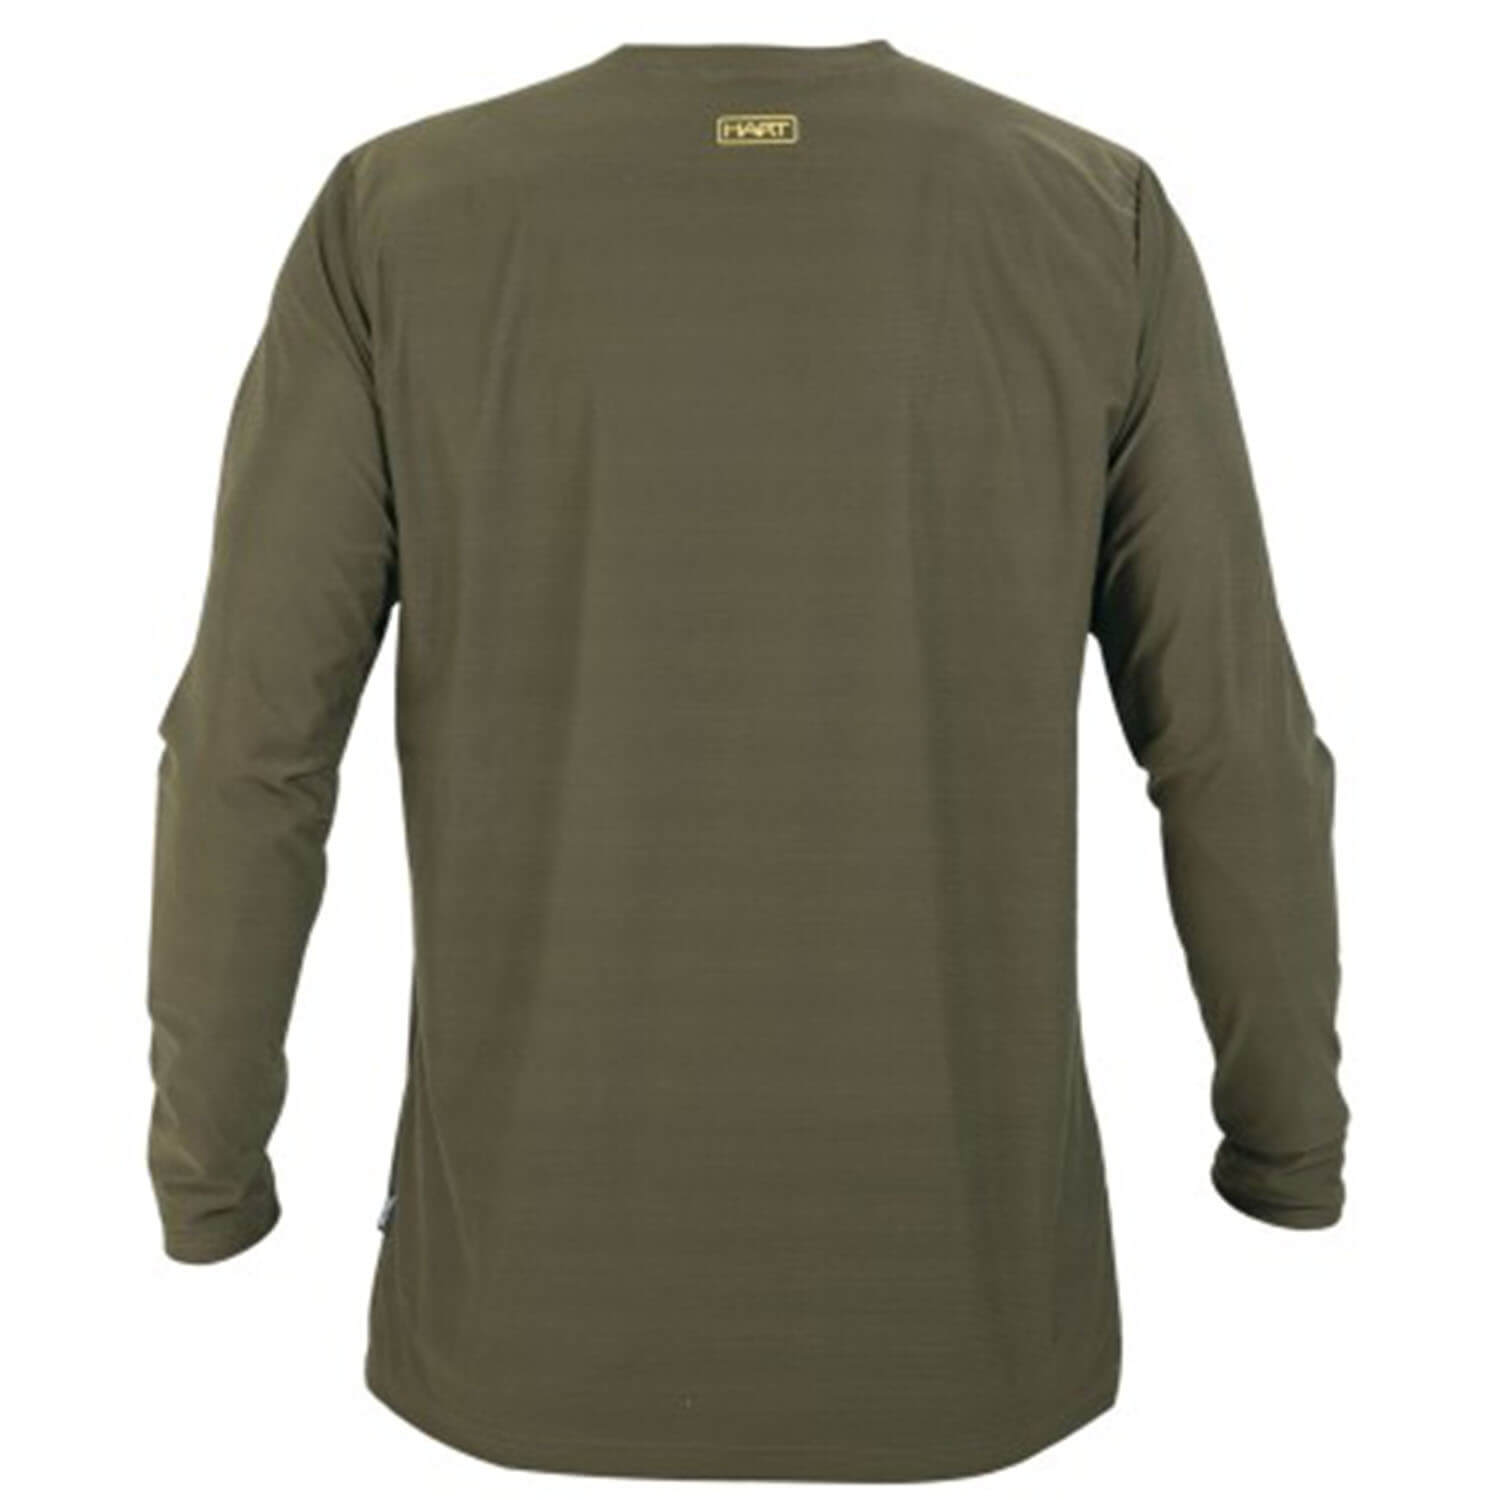  Hart Ural-TL shirt met lange mouwen (groen)